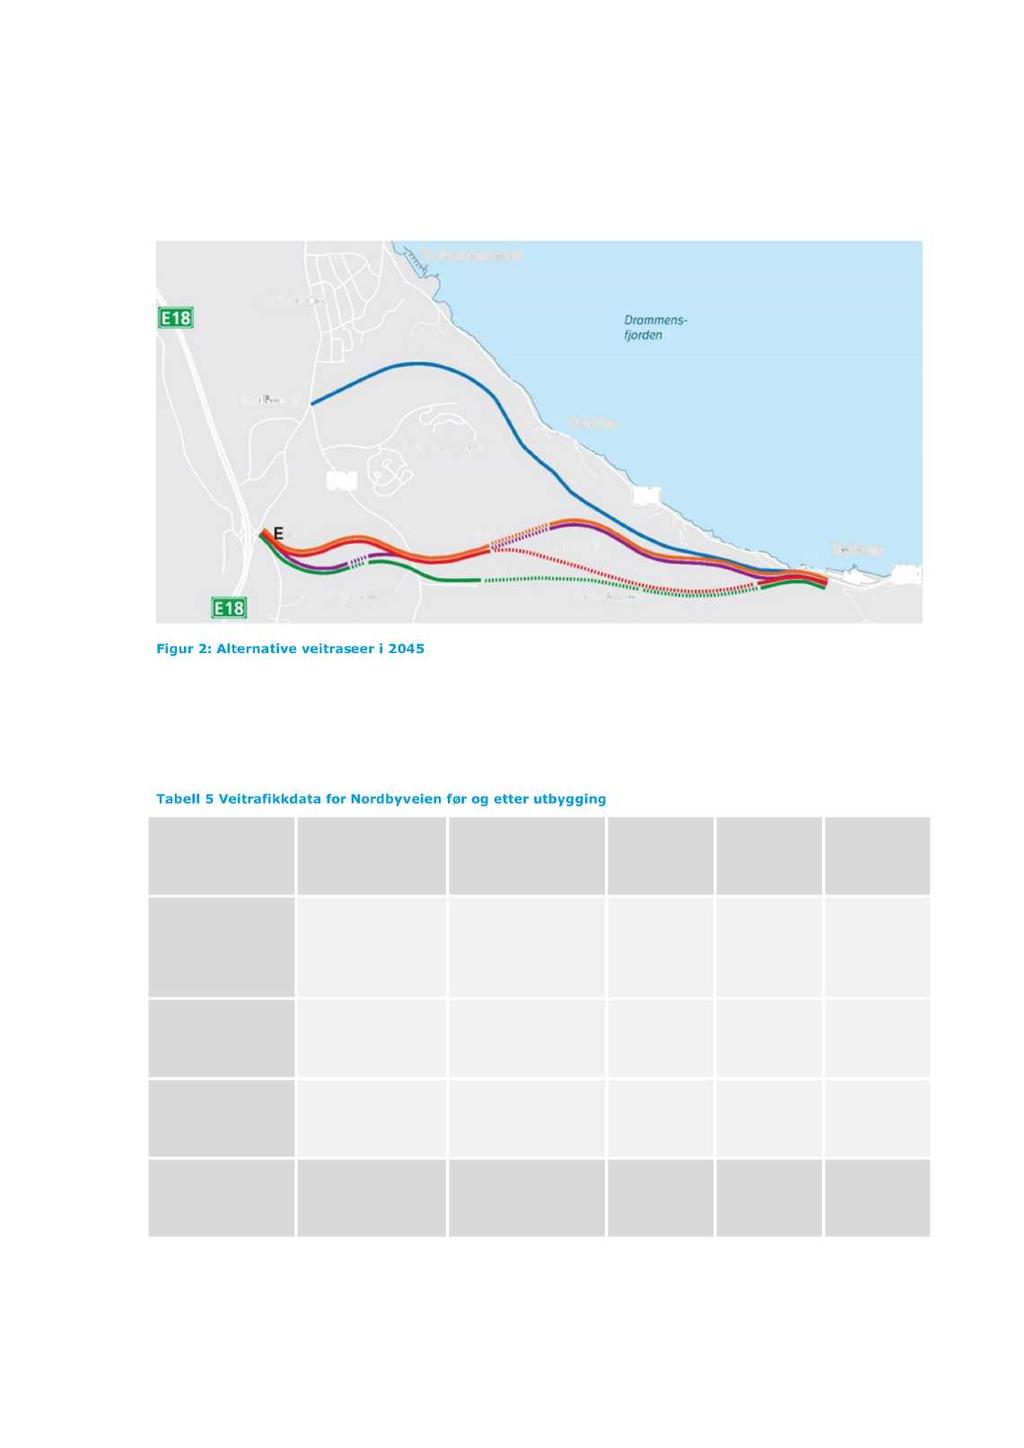 10 (18) STØYUTREDNING Tabell 5 viser veitrafikkdata som er brukt i beregningene av støysonekart fra Nordbyveien før og etter utbygging.